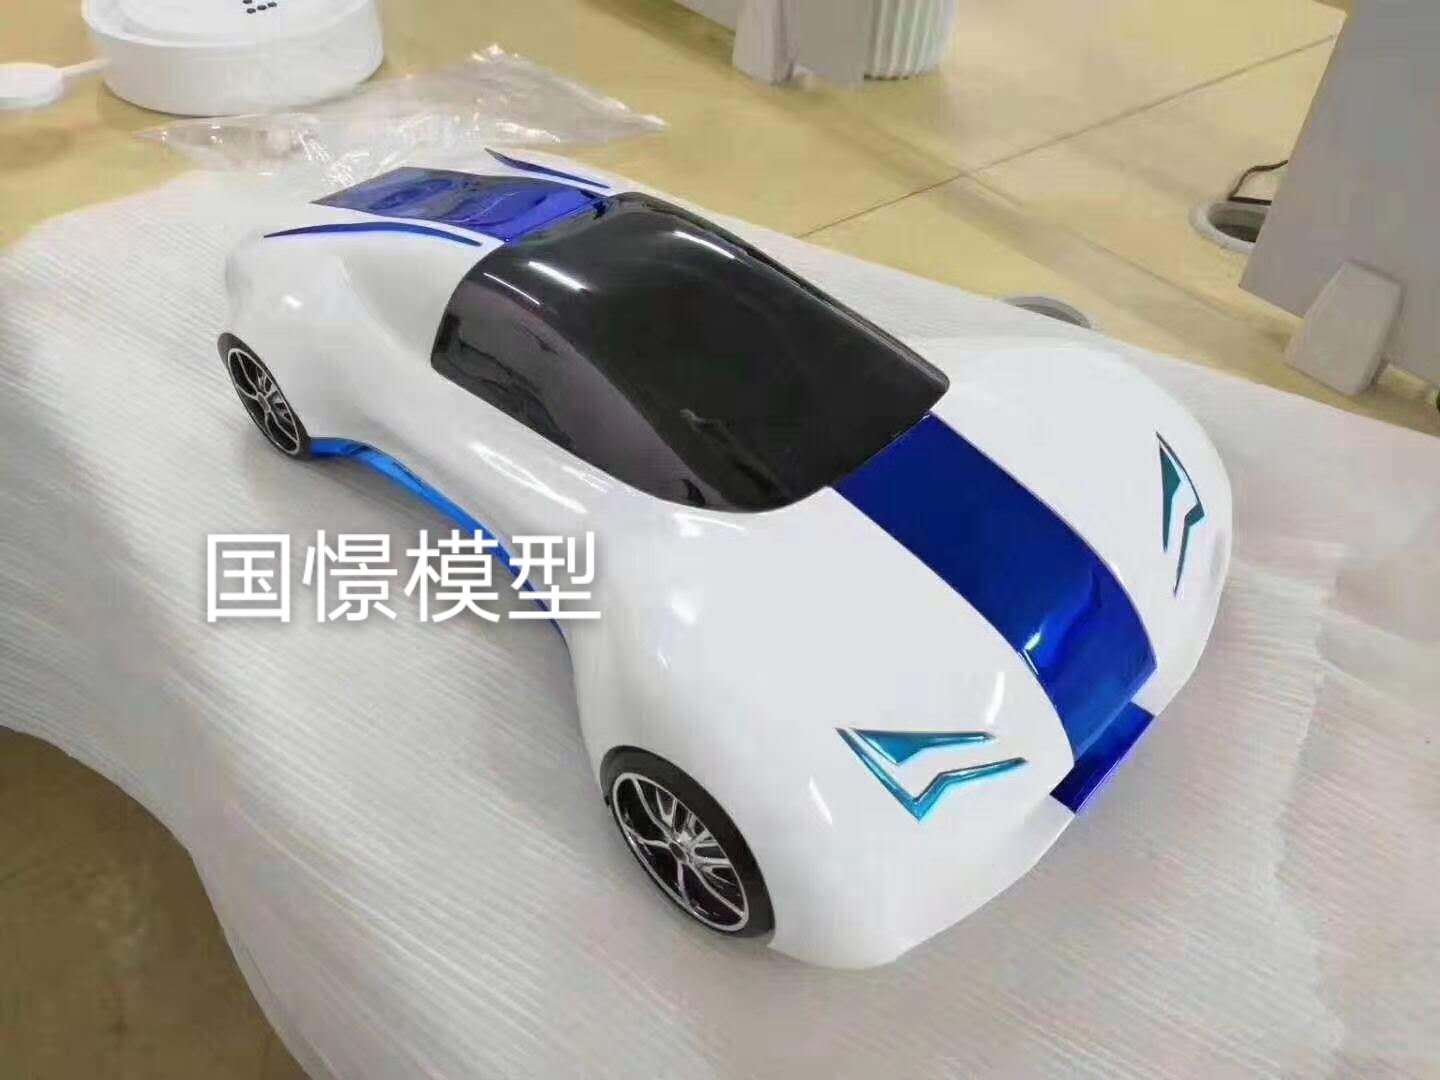 麻江县车辆模型